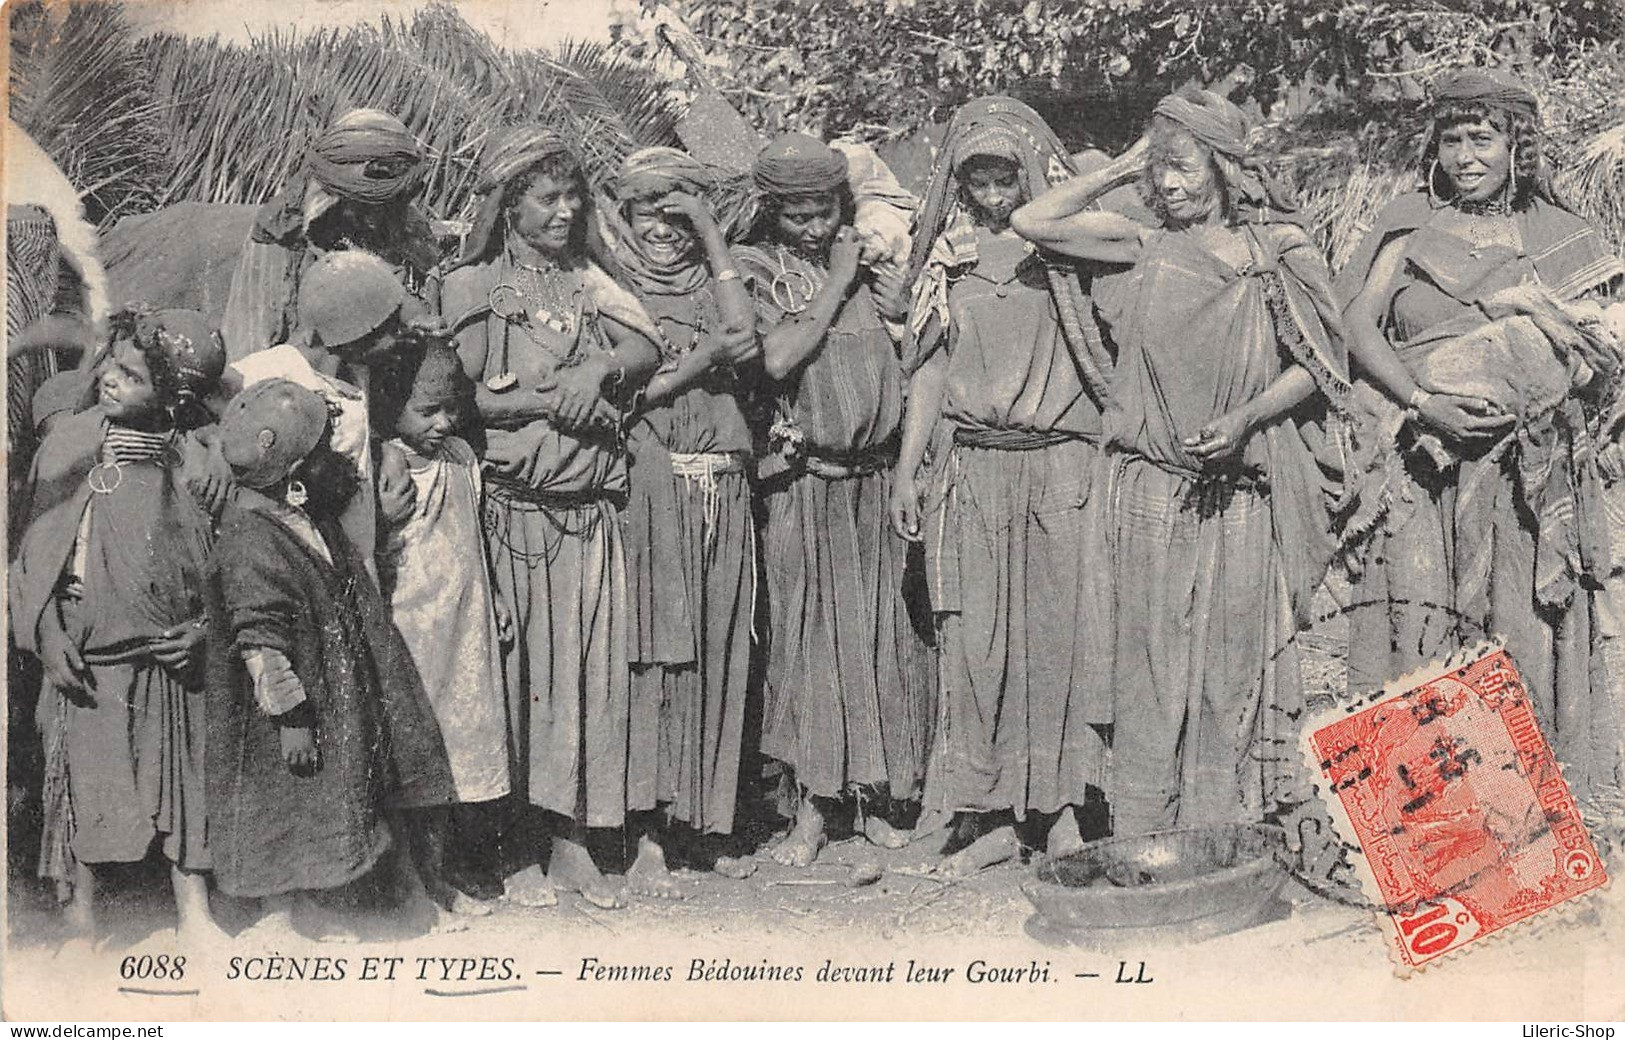 TUNISIE / SCÈNES ET TYPES CPA ± 1910 ▬ FEMMES BÉDOUINES DEVANT LEUR GOURBI ▬ ÉDIT. LL N°6088 - Tunisia